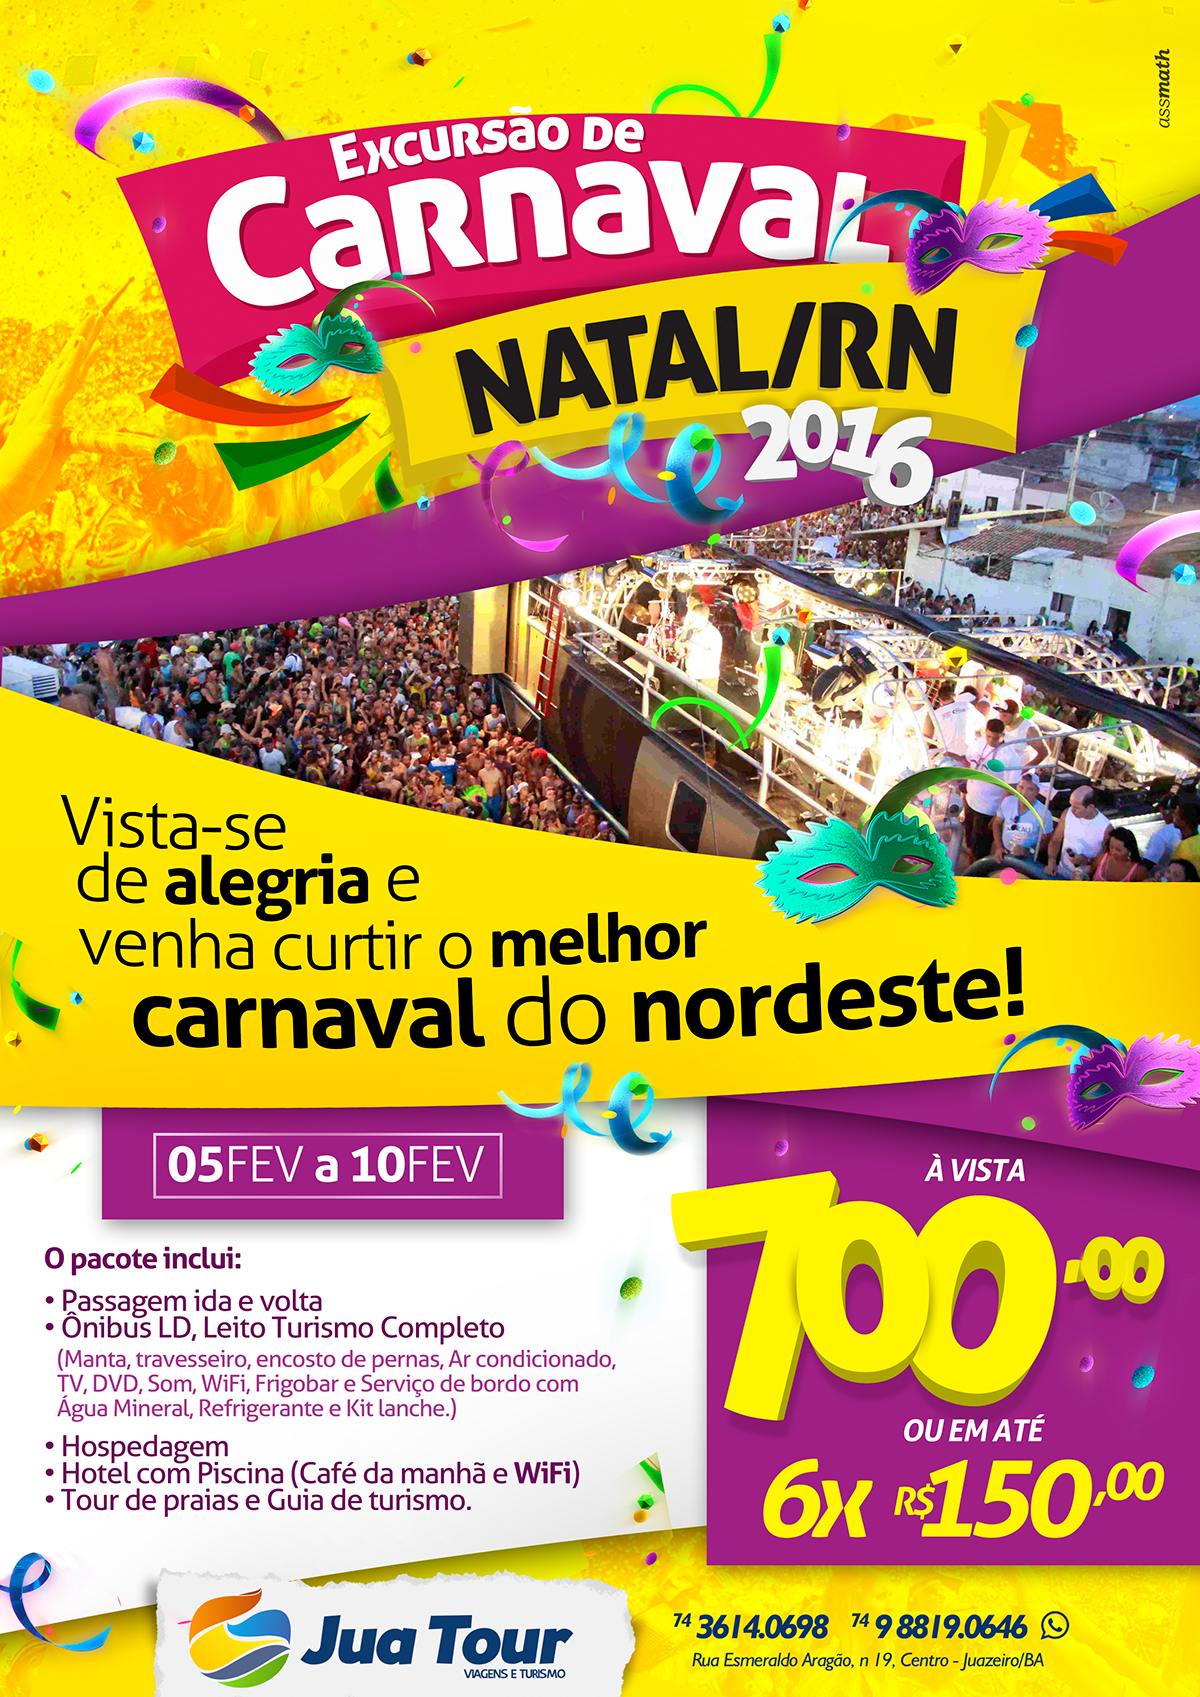 Cartaz Excursão de Carnaval p/ Natal/RN | JuaTOUR on Behance